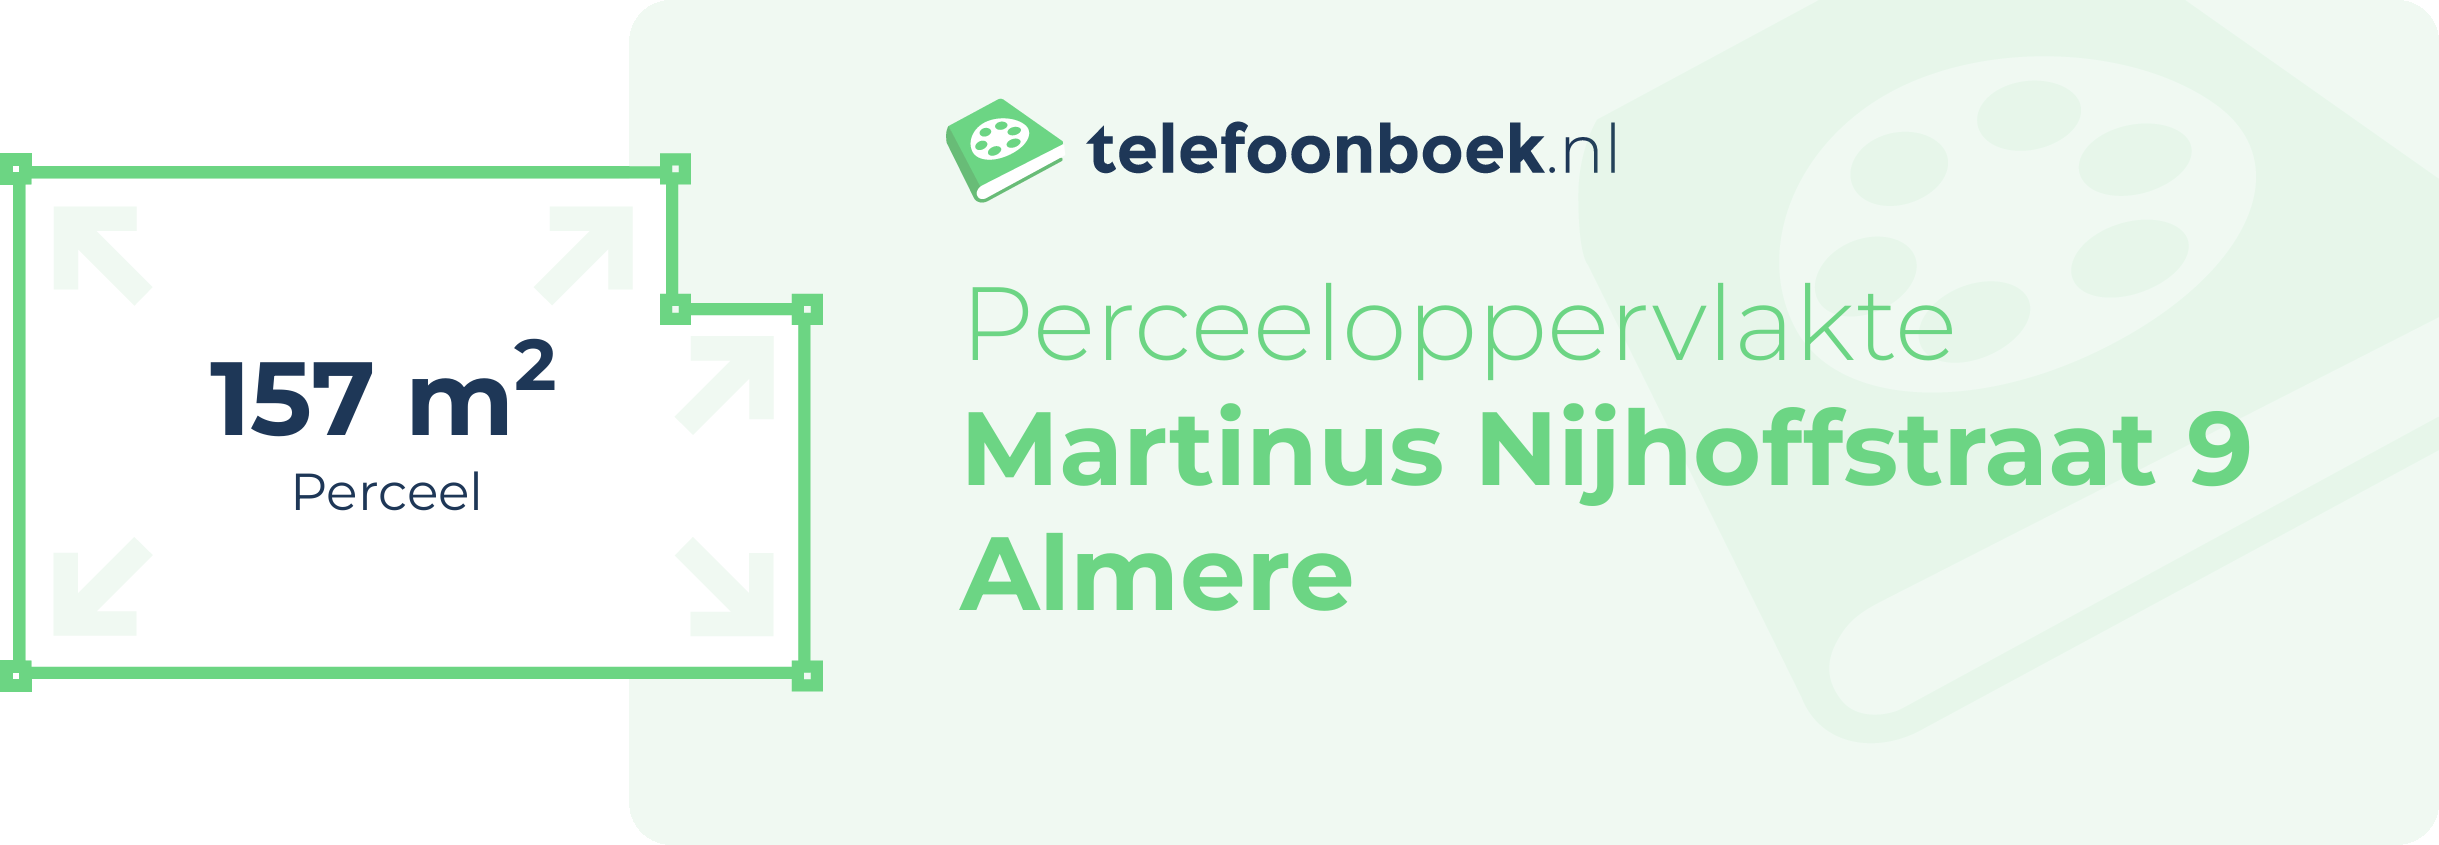 Perceeloppervlakte Martinus Nijhoffstraat 9 Almere